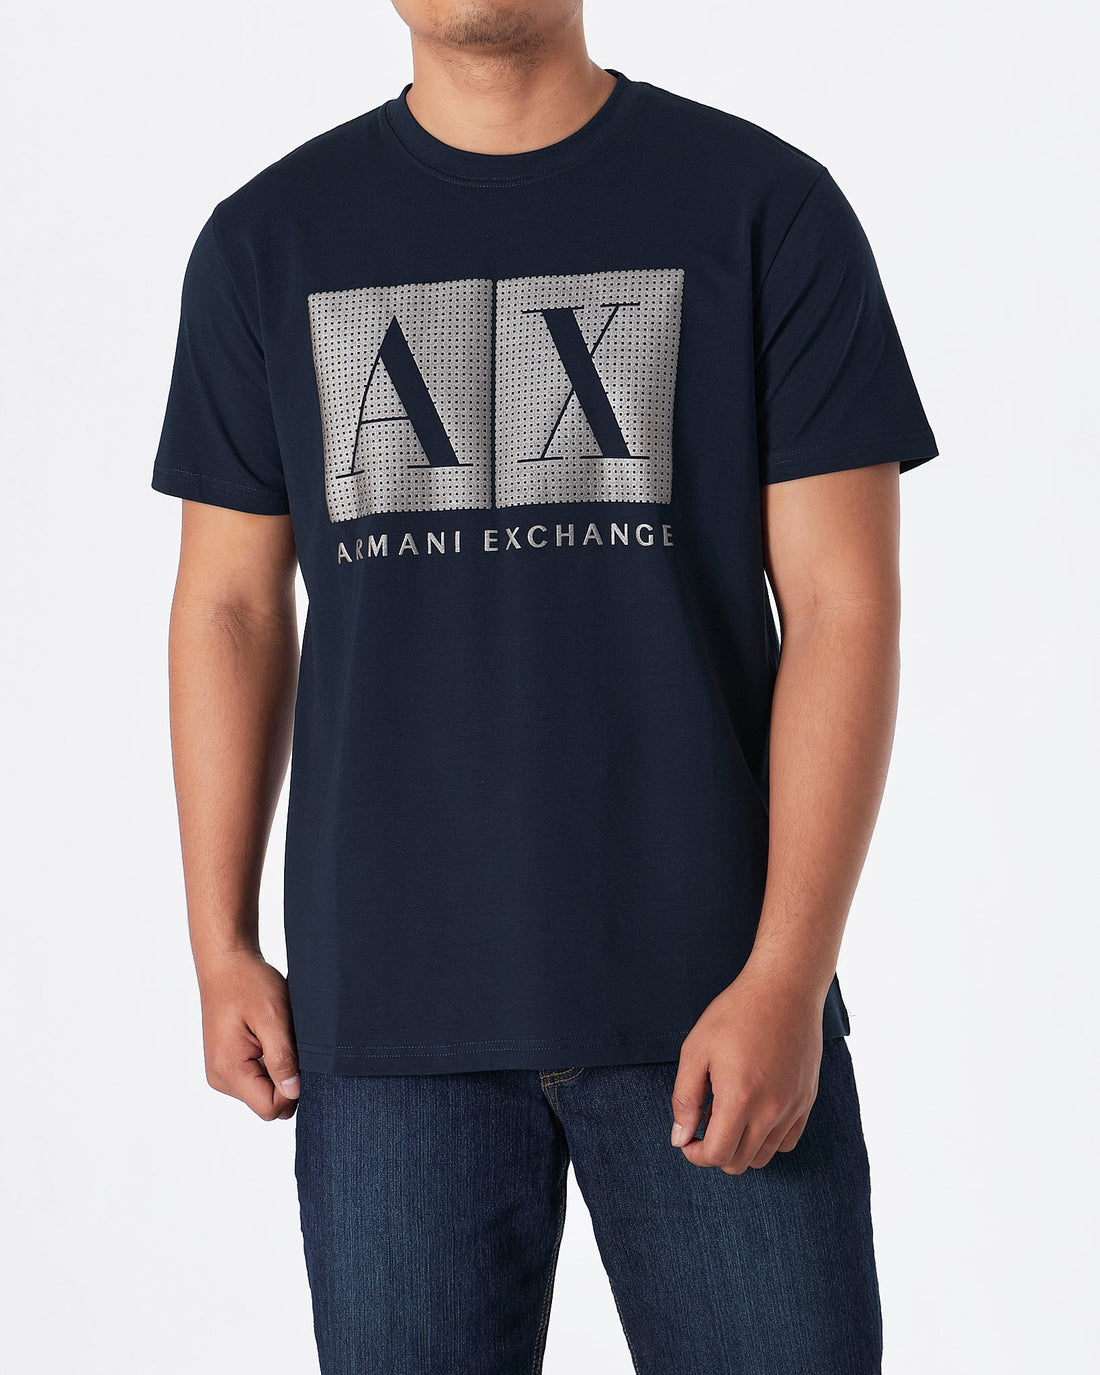 MOI OUTFIT-ARM Exchange Men Blue T-Shirt 17.90